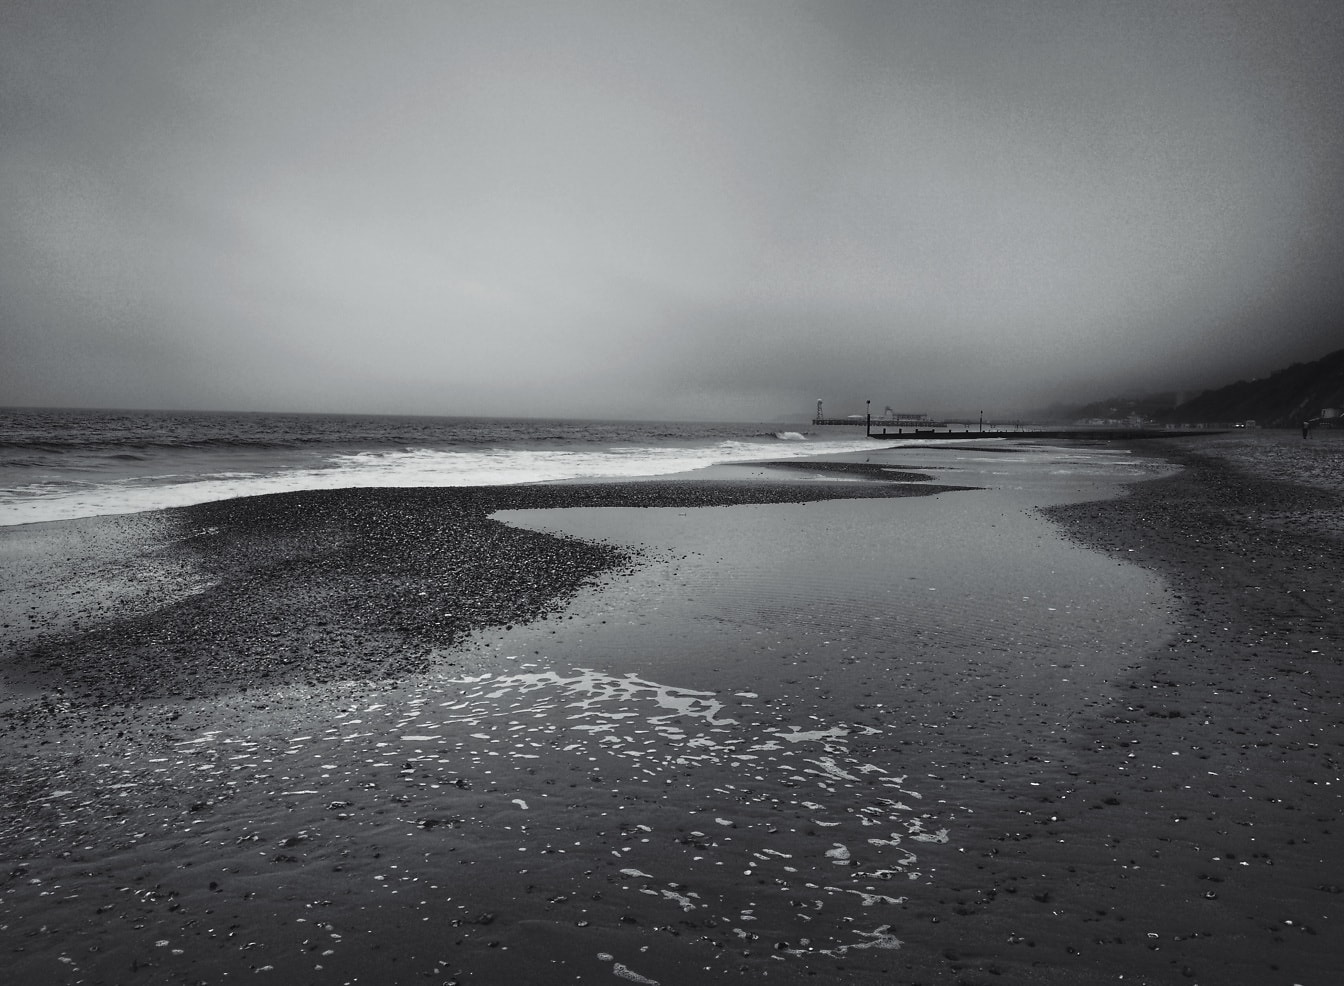 Pláž Bournemouth pri odlive čiernobiela fotografia morskej scenérie